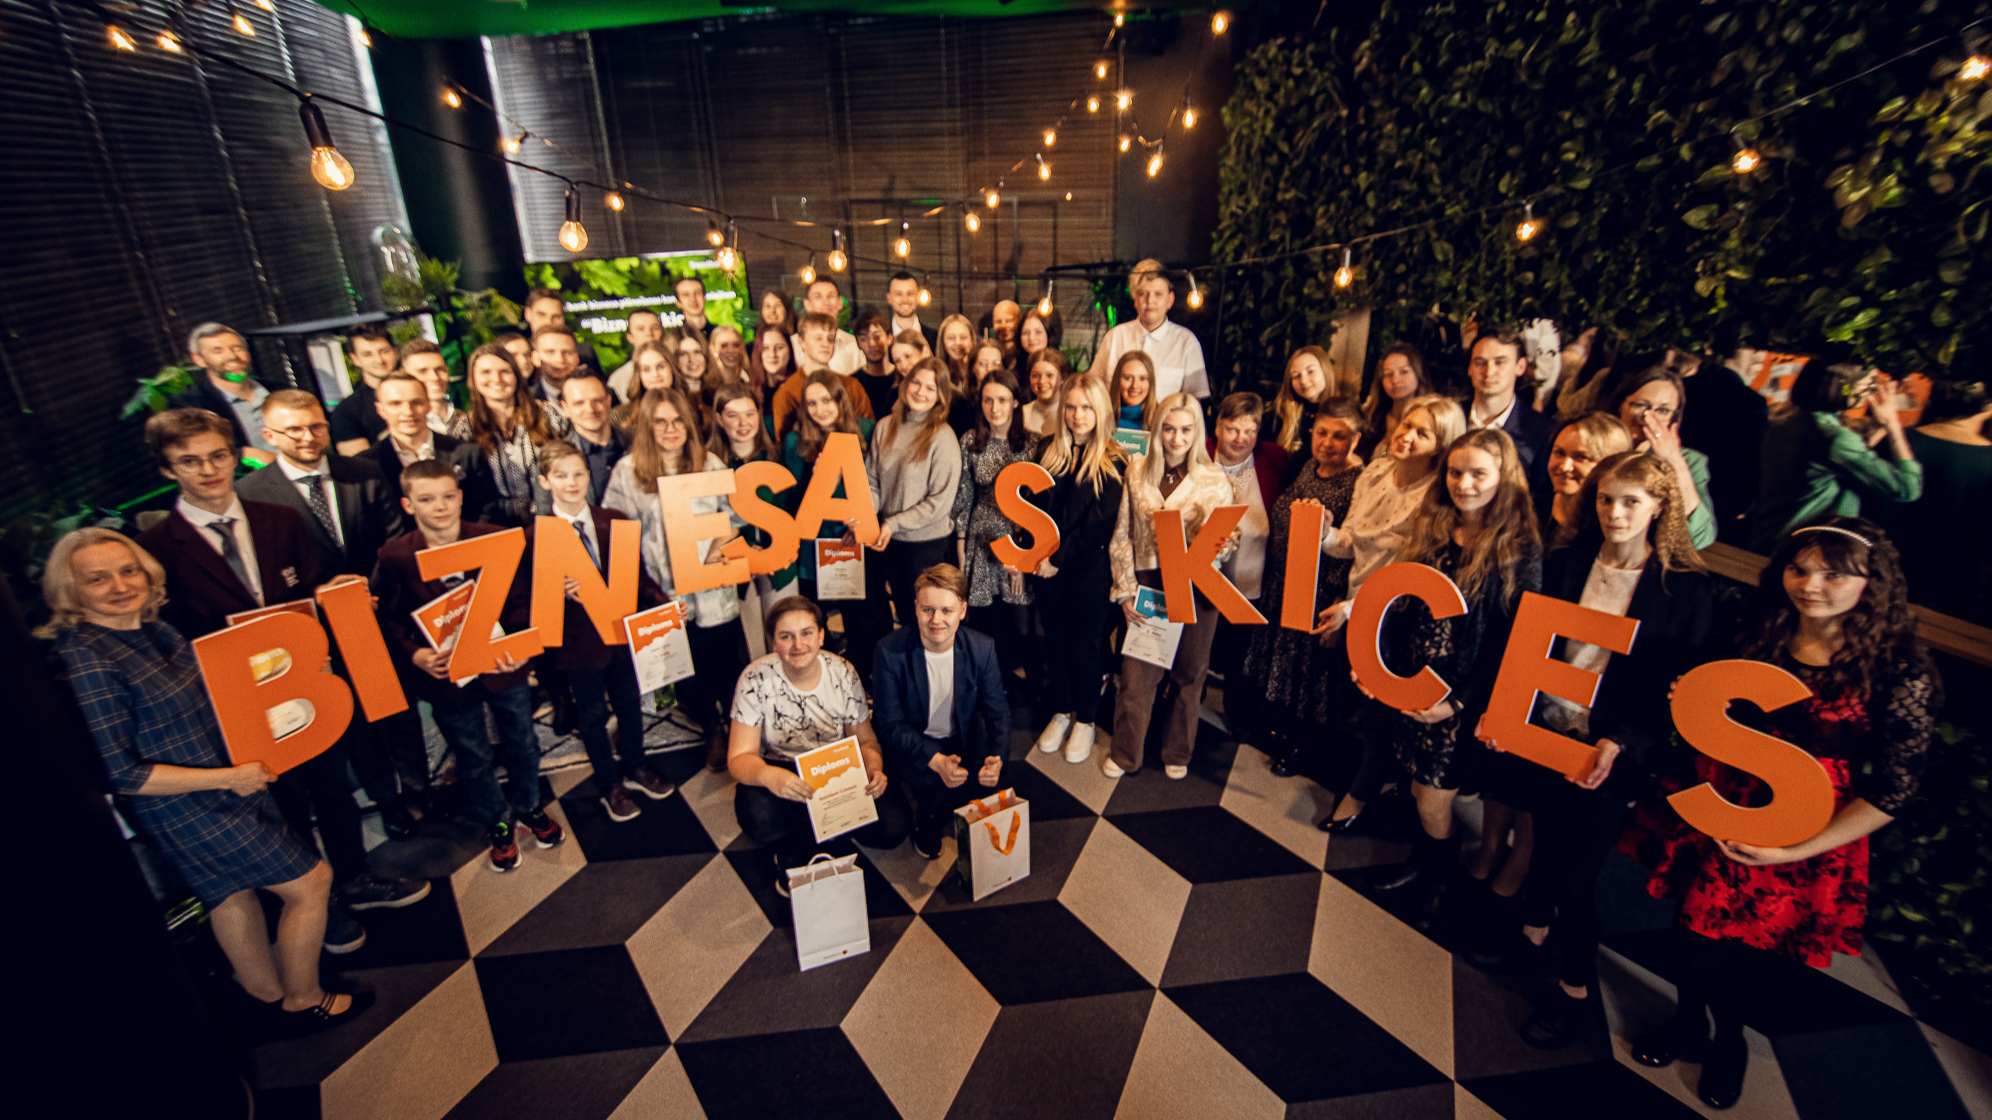 Vēl tikai līdz nedēļas beigām Rīgas jaunieši savas idejas var pieteikt konkursā “Biznesa skices”